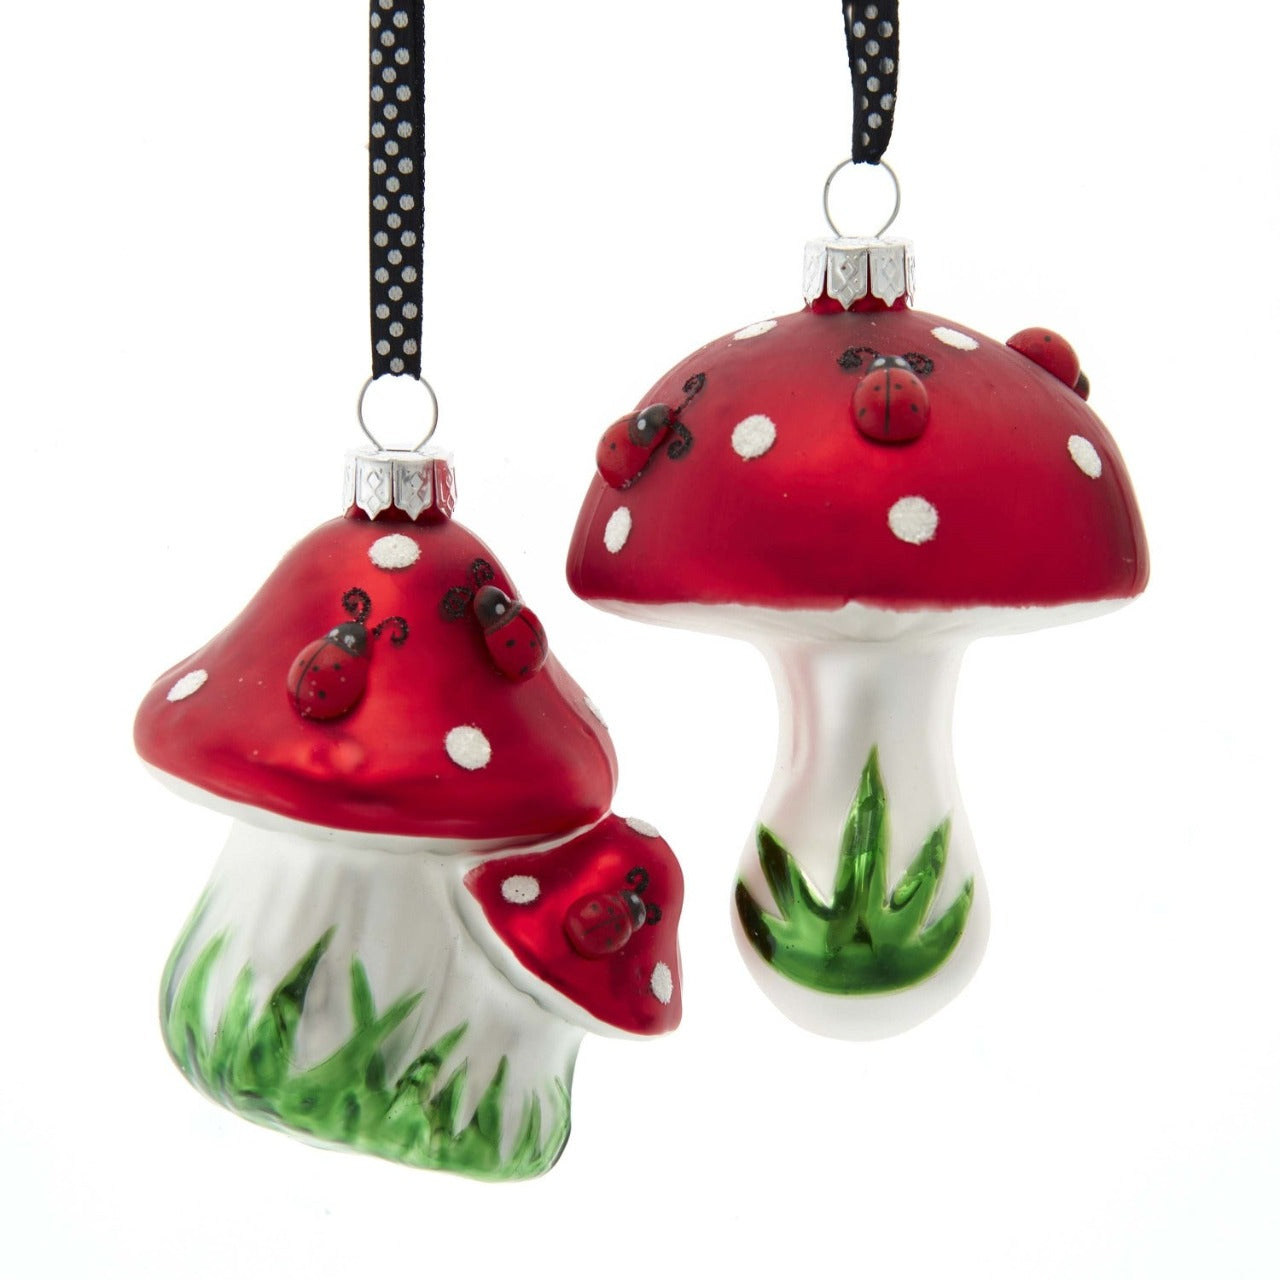 Kurt S Adler Ladybug On Mushroom Christmas Ornaments - Double